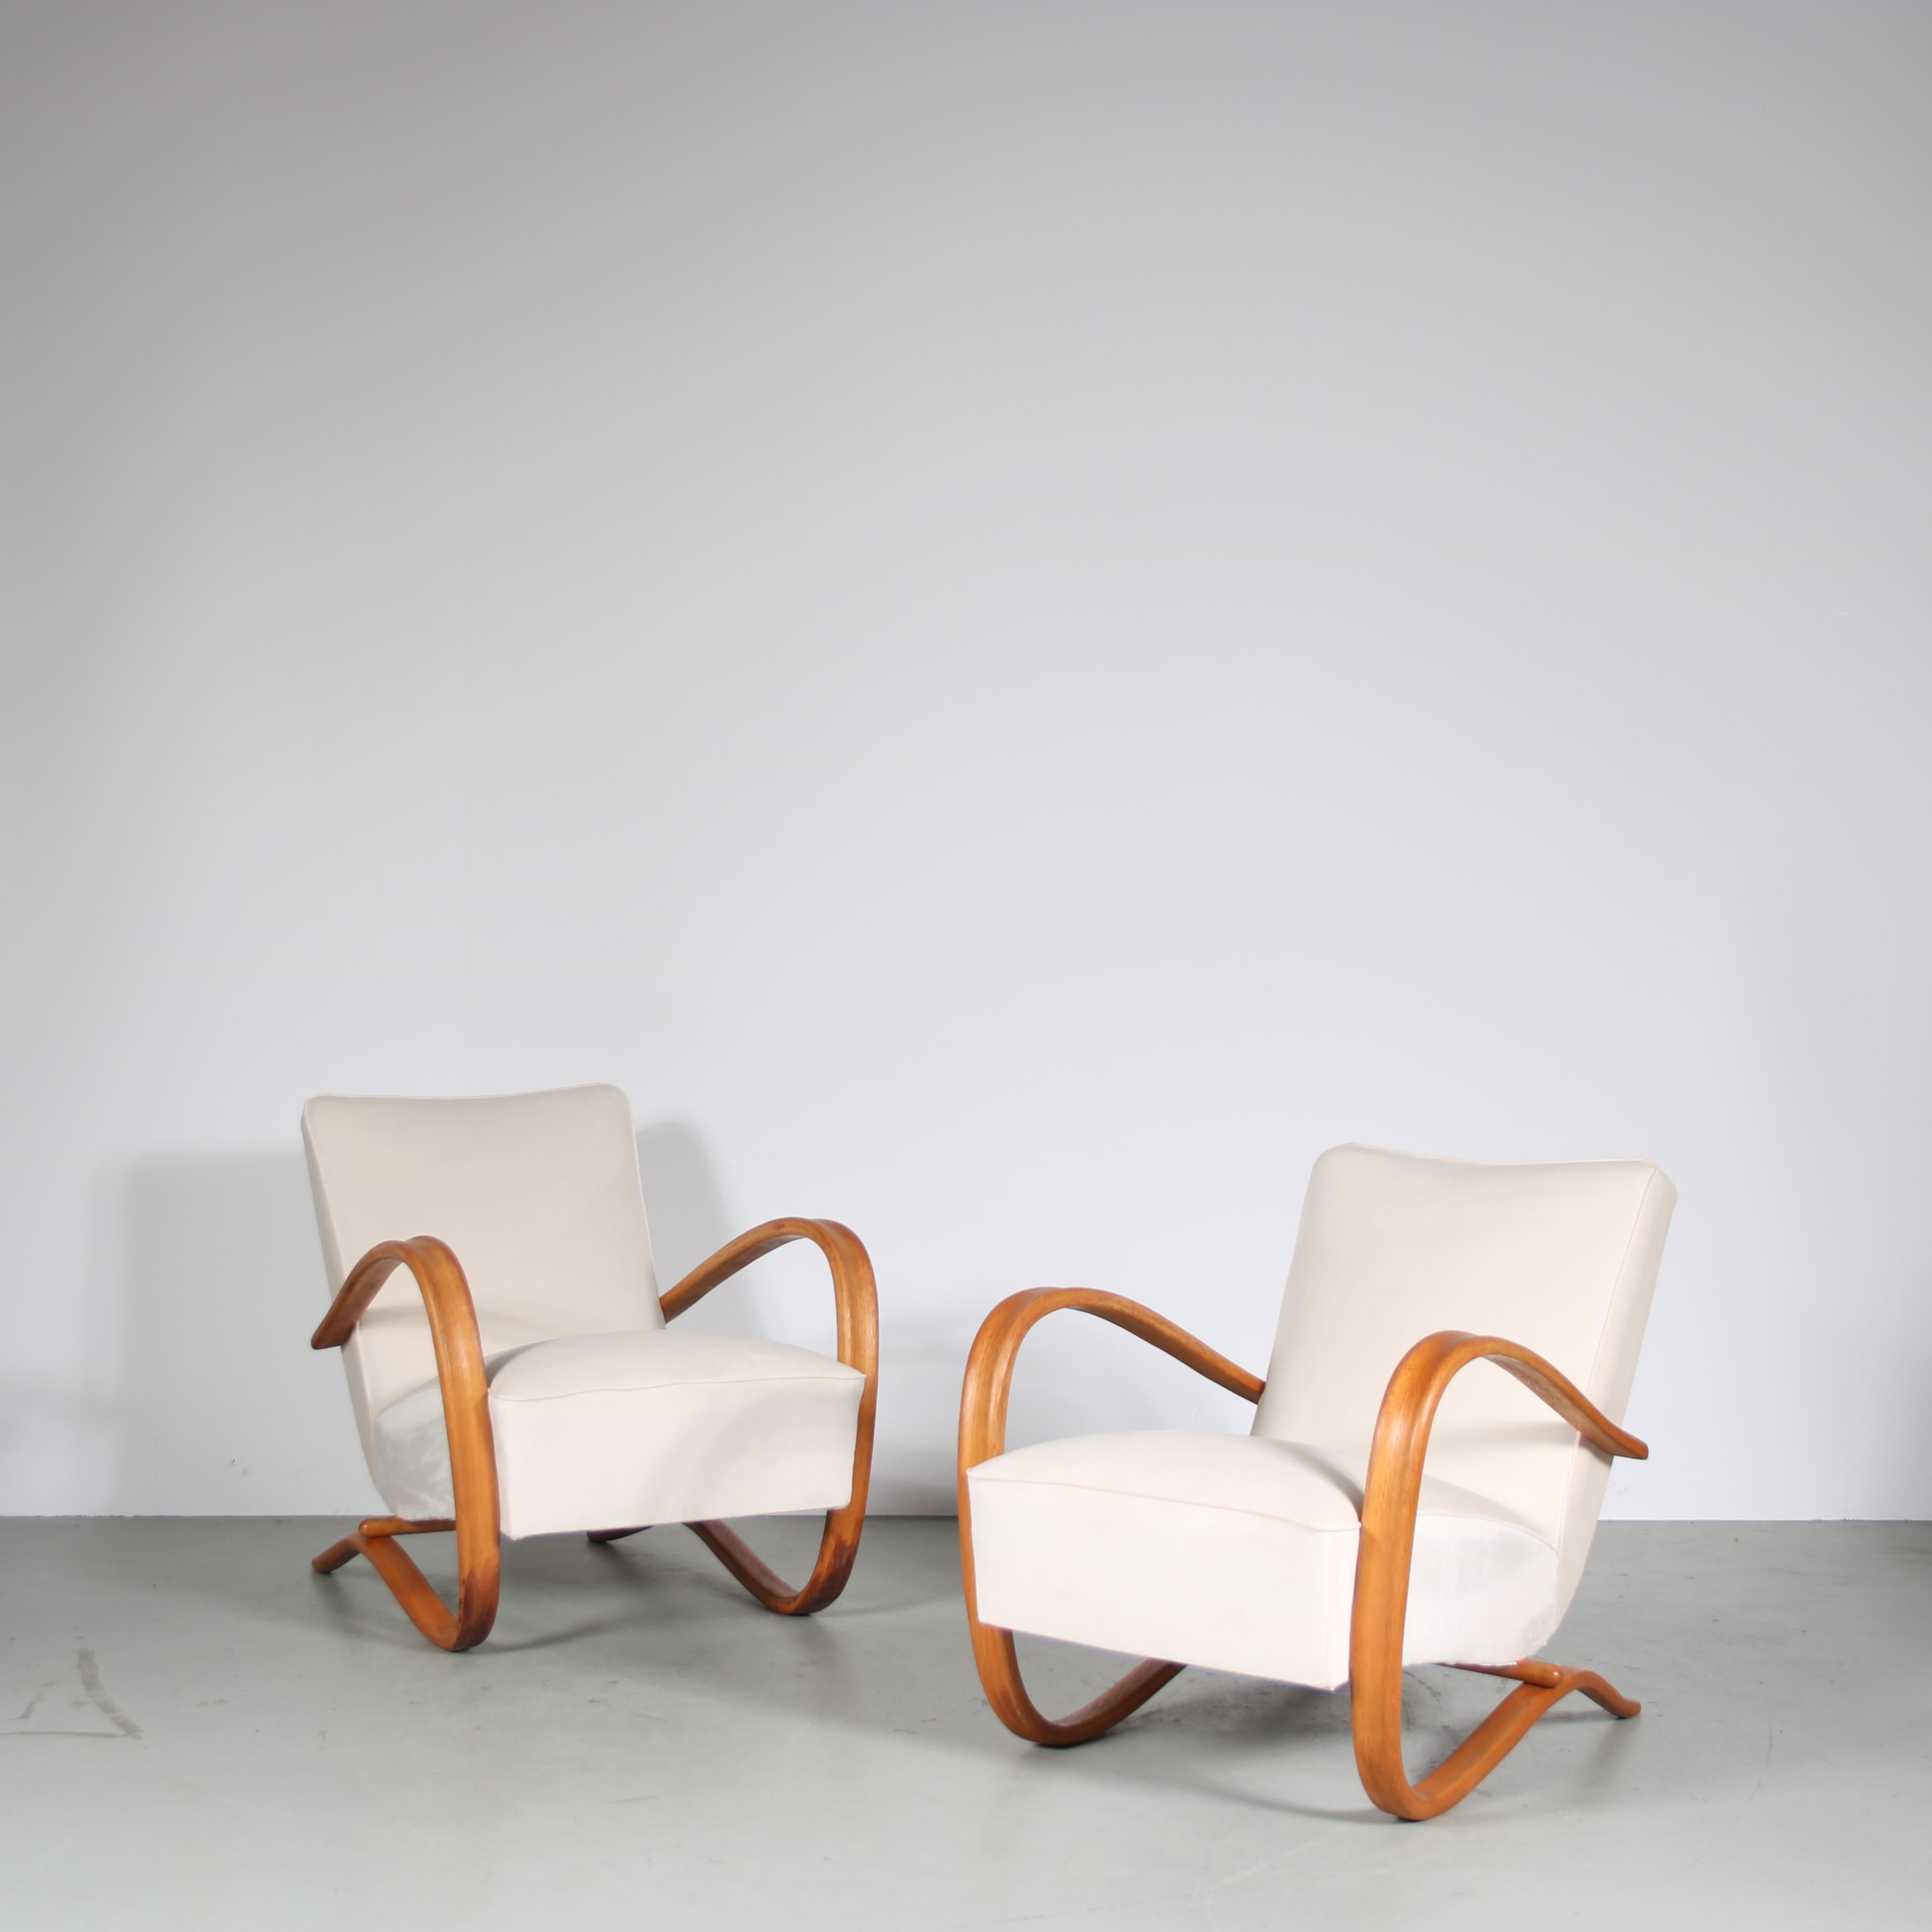 Paire de chaises de salon emblématiques au design tchèque accrocheur de Jindrich Halabala, fabriquées par Up Zavody en République tchèque vers 1930.

Ces chaises ont un beau style art déco. Les accoudoirs incurvés en bois clair s'intègrent